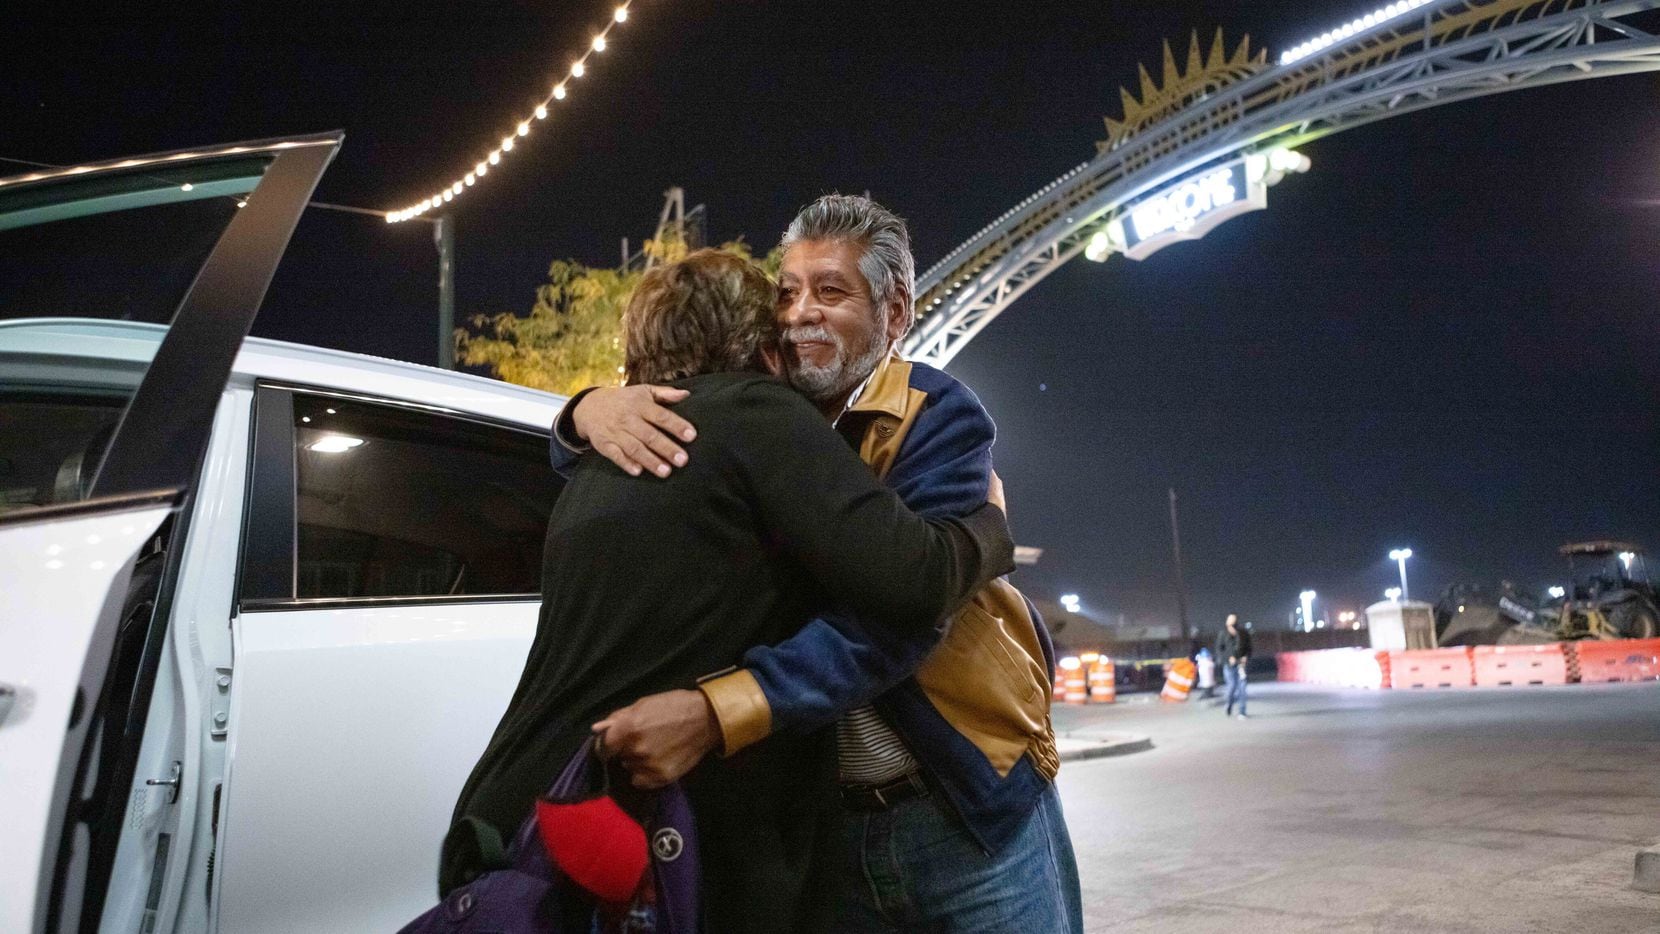 Ramón Delgado, de 60 años y originario de Chihuahua, se reencontró con su hermana Bertha Galván de 71 años, quien reside en El Paso, el lunes 8 de noviembre, al reabrirse la frontera entre Estados Unidos y México.